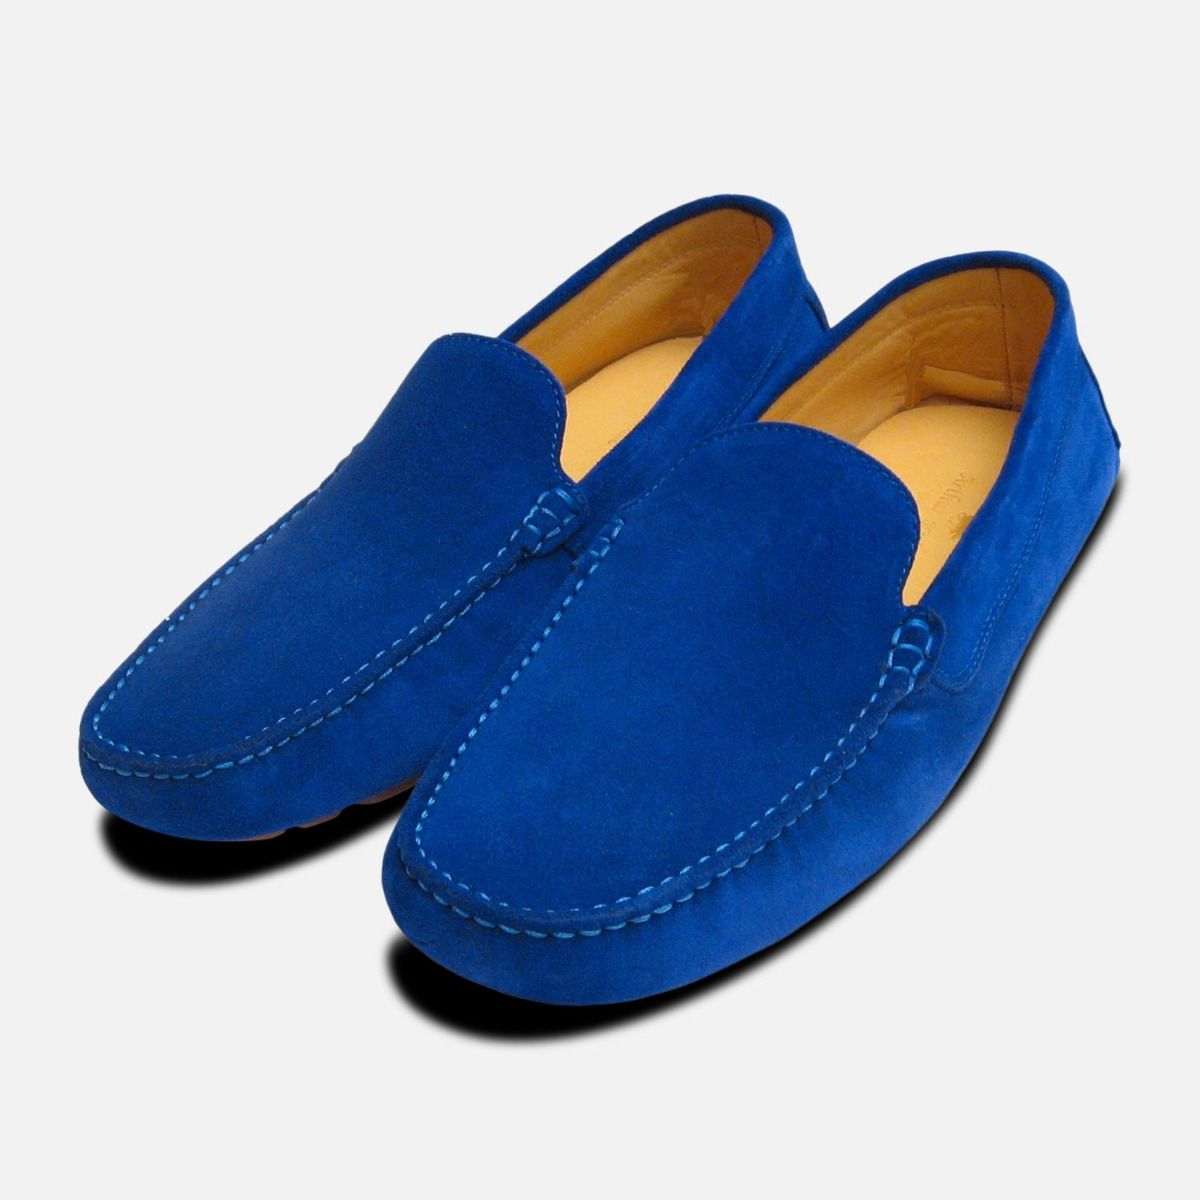 Royal Blue Suede Shoes For Men Discount | bellvalefarms.com